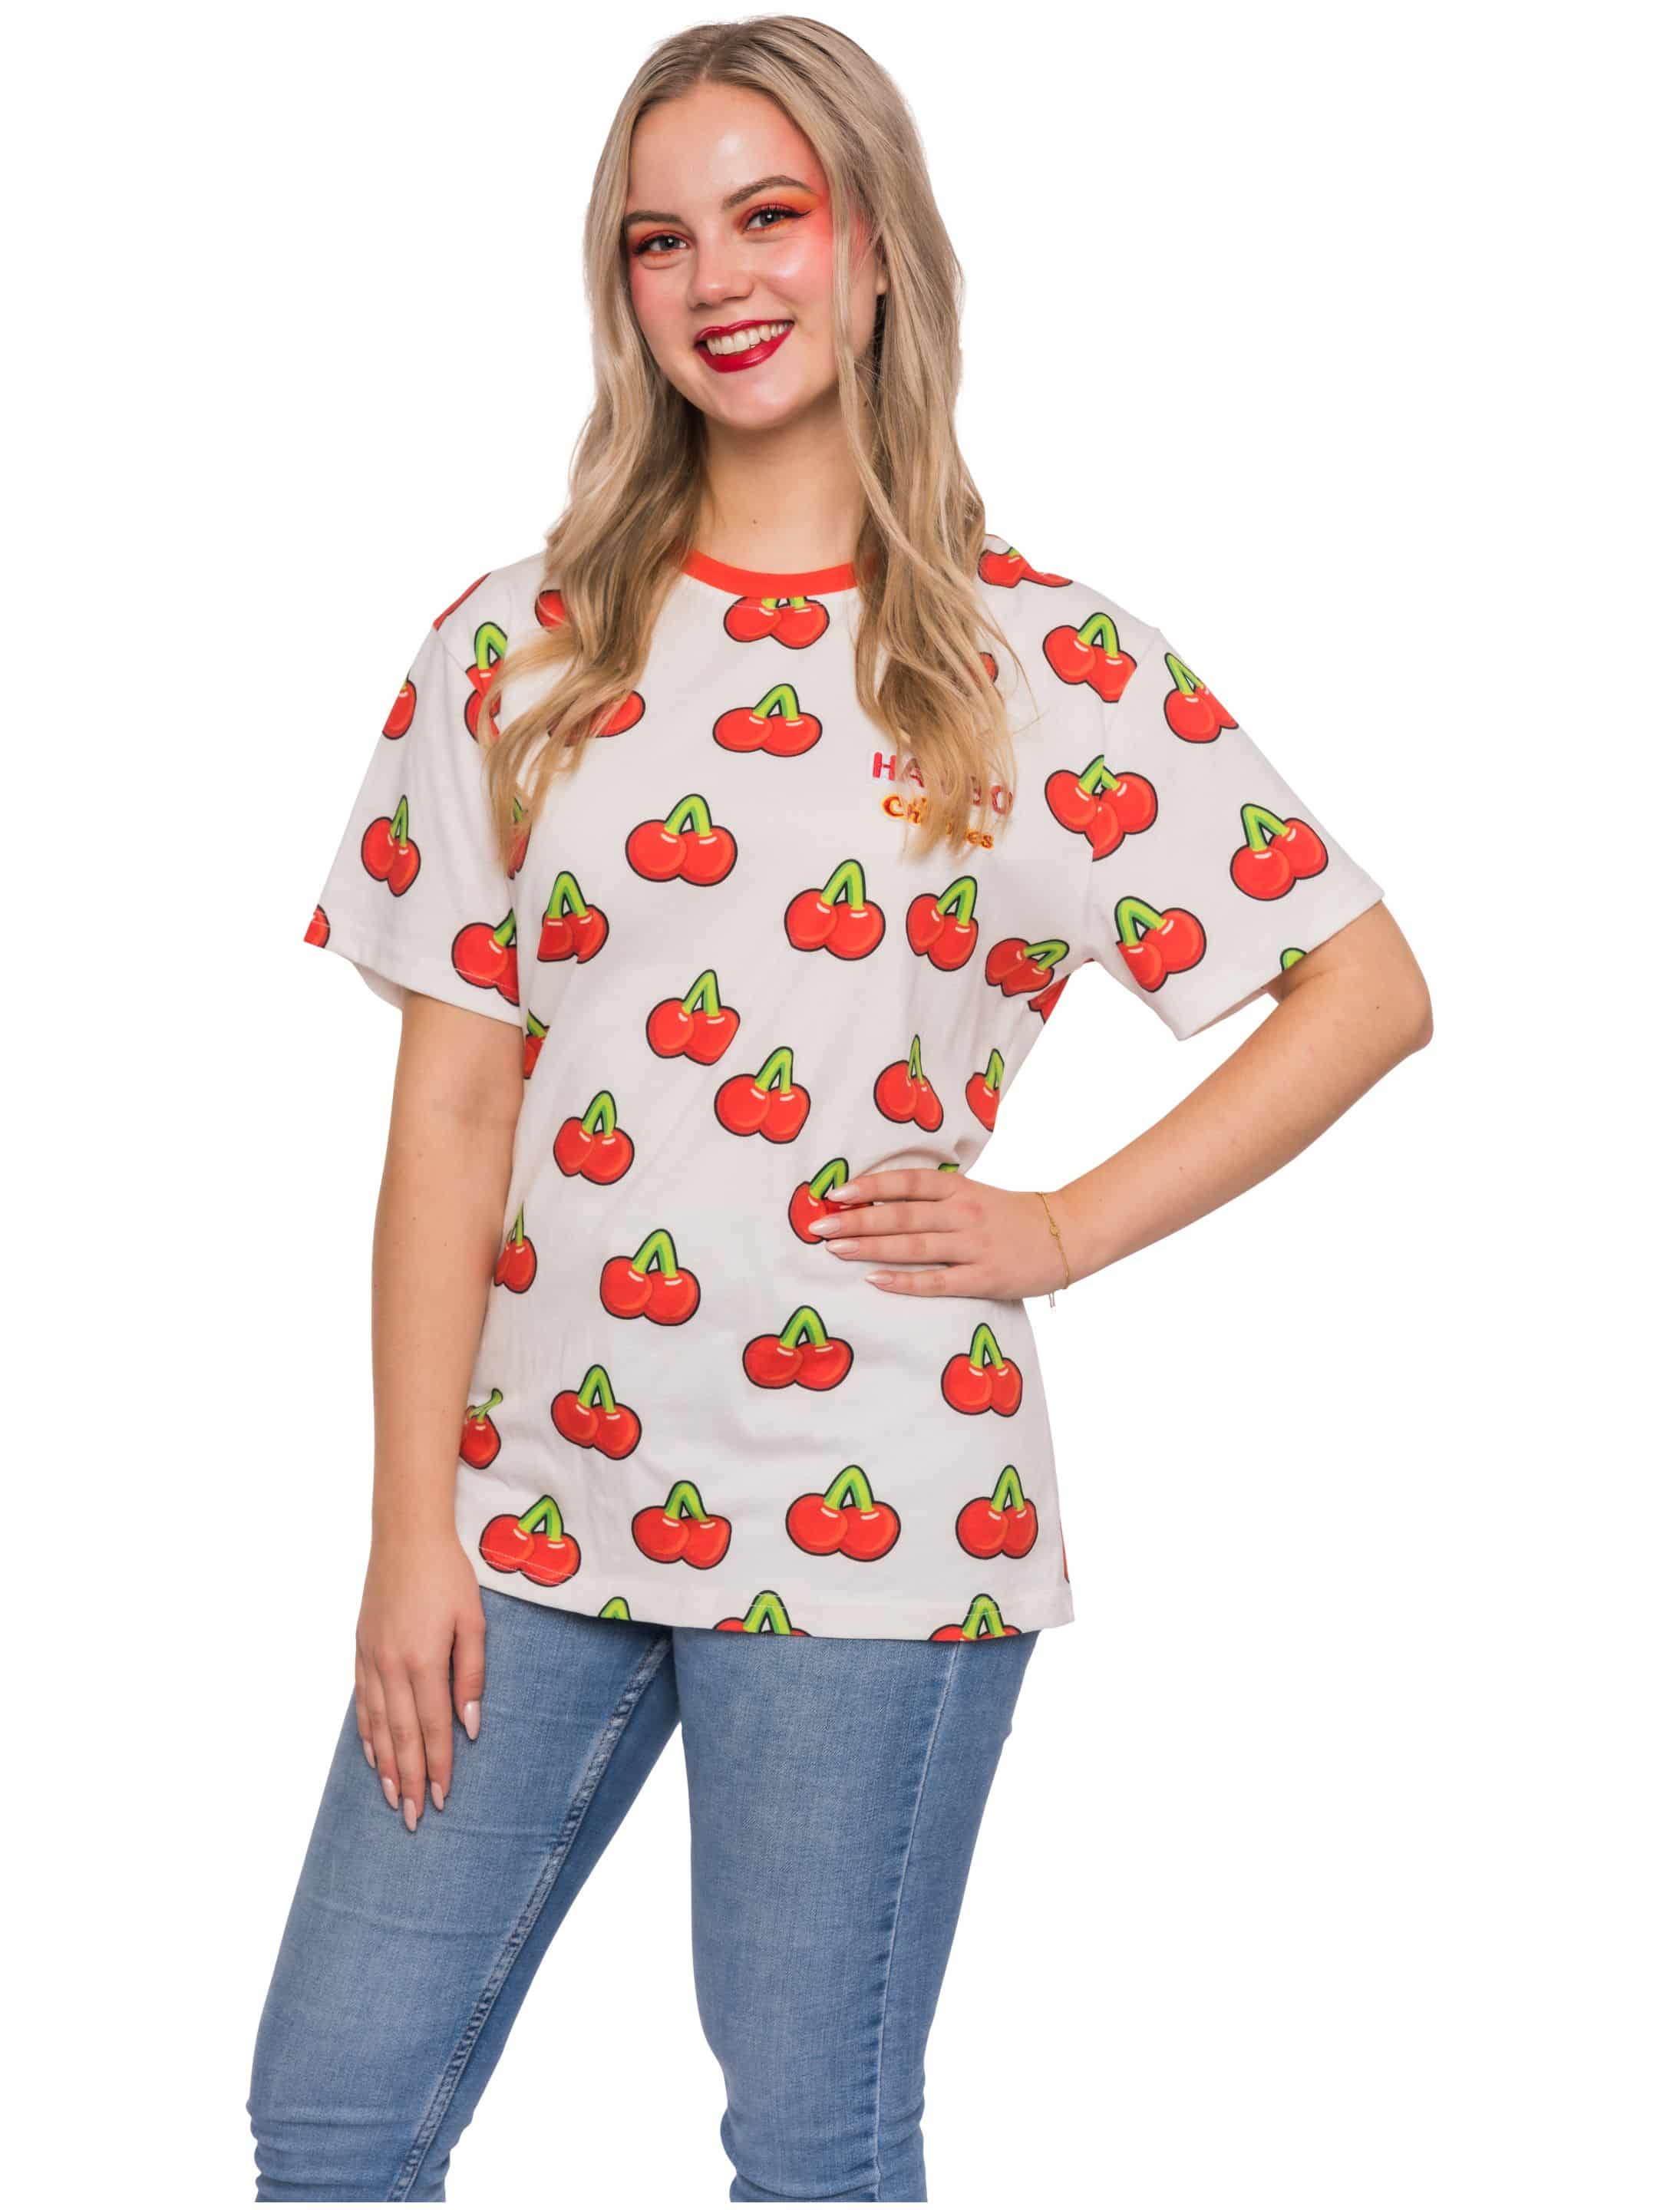 T-Shirt HARIBO Happy Cherries Unisex weiß/rot L